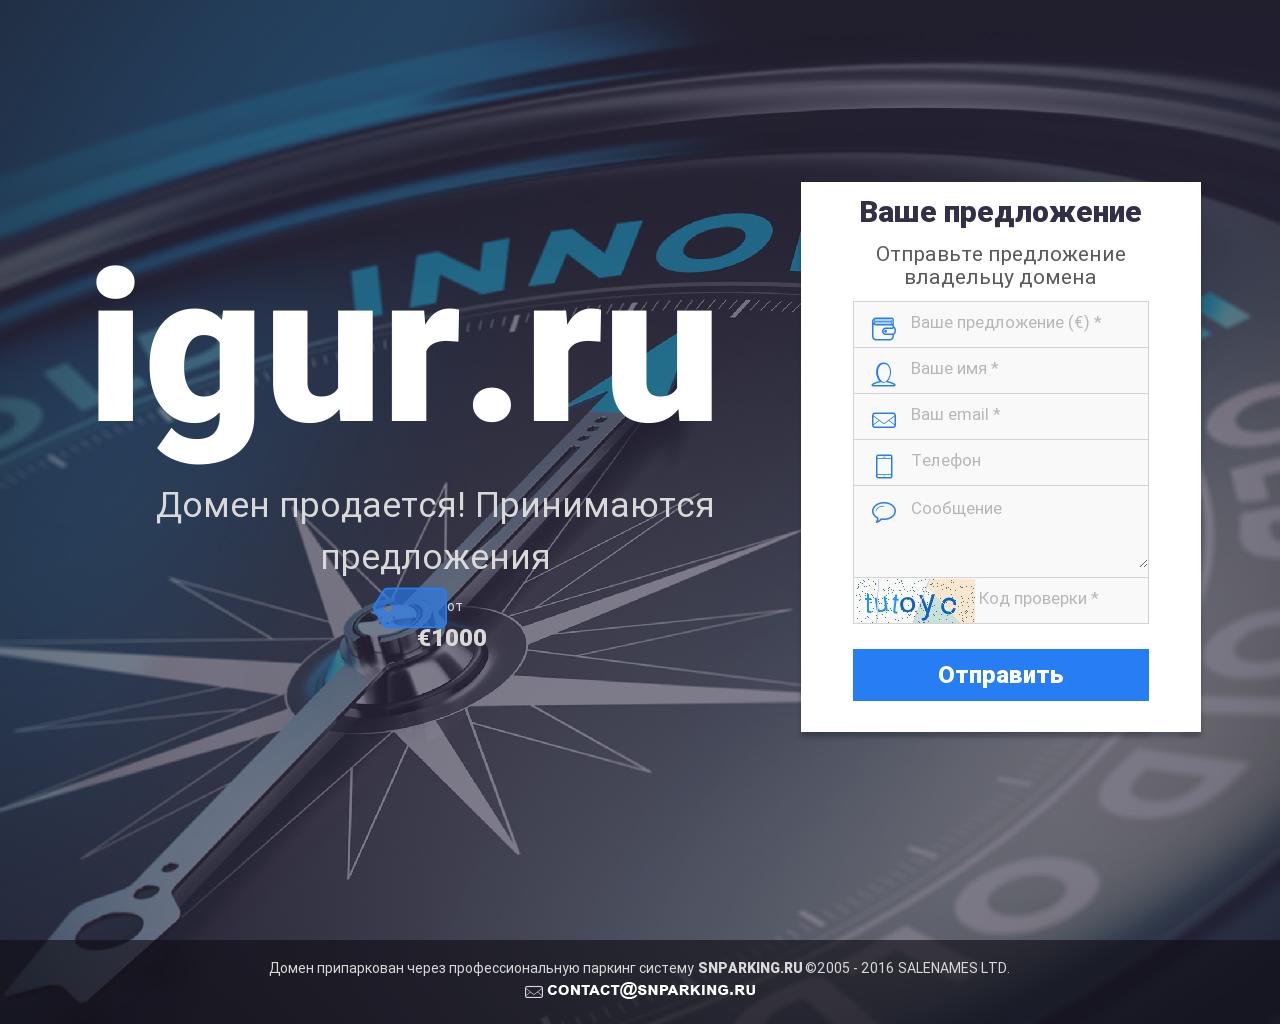 Изображение сайта igur.ru в разрешении 1280x1024